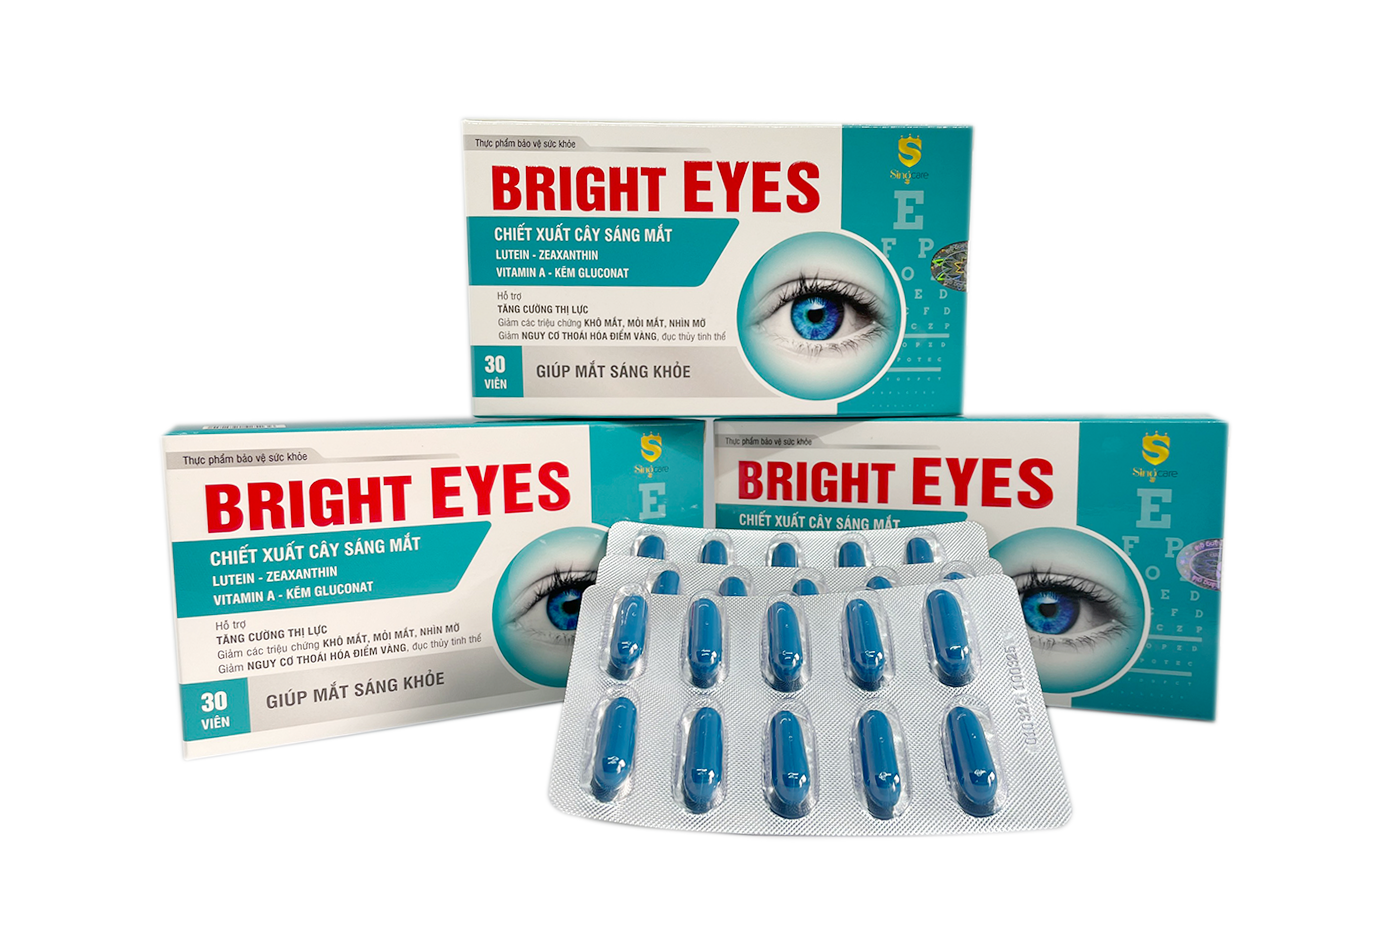 Thực phẩm bảo vệ sức khoẻ Bright Eyes - tăng cường thị lực, giảm khô mắt, mỏi mắt, nhìn mờ, giảm nguy cơ thoái hoá điểm vàng, đục thuỷ tinh thể, 3 vỉ X10 viên